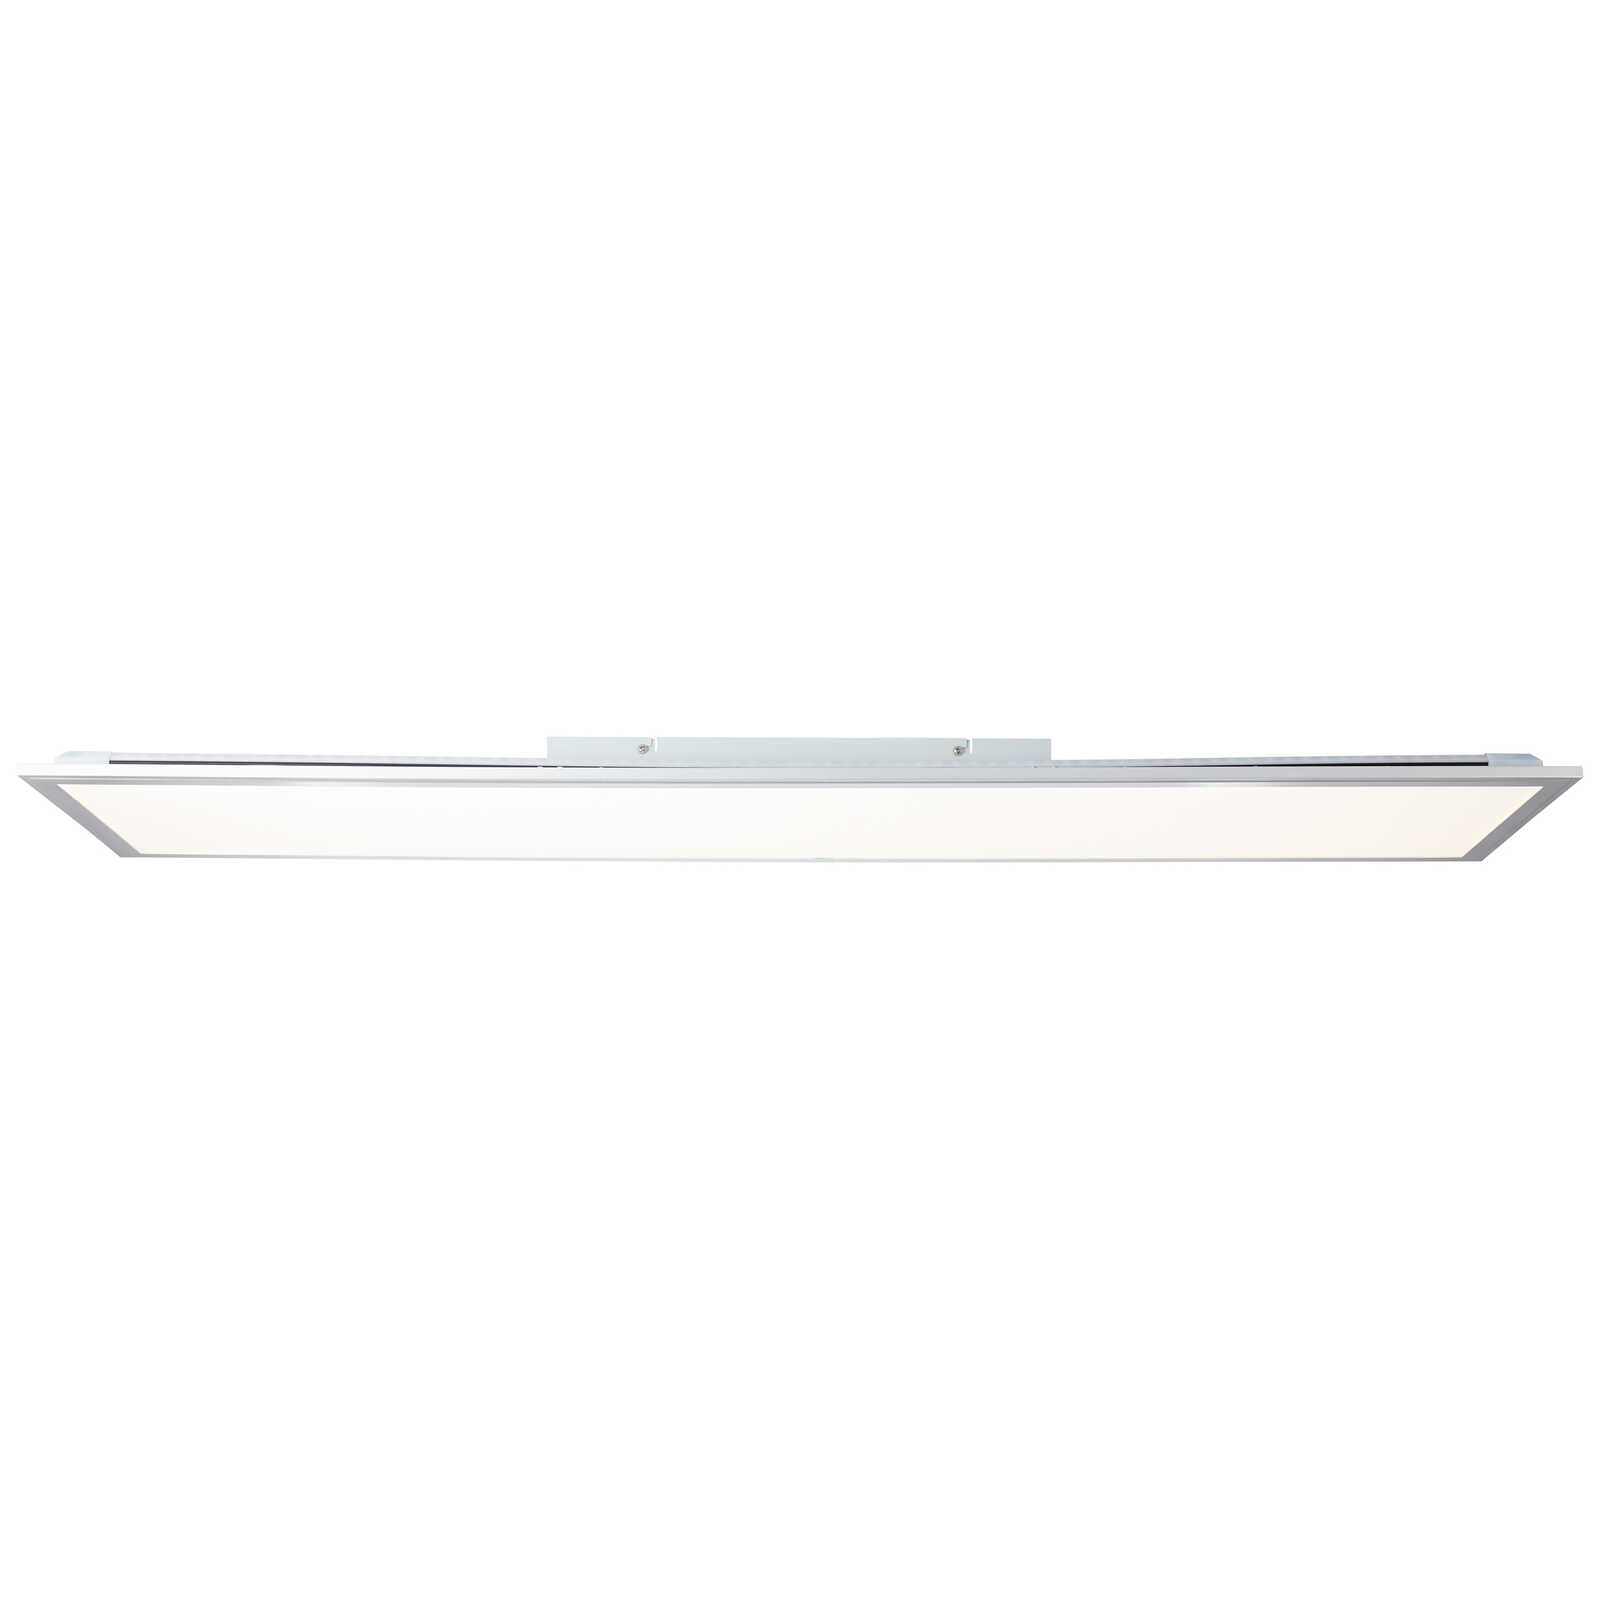             Metalen plafondlamp - Alba 3 - zilver, wit
        